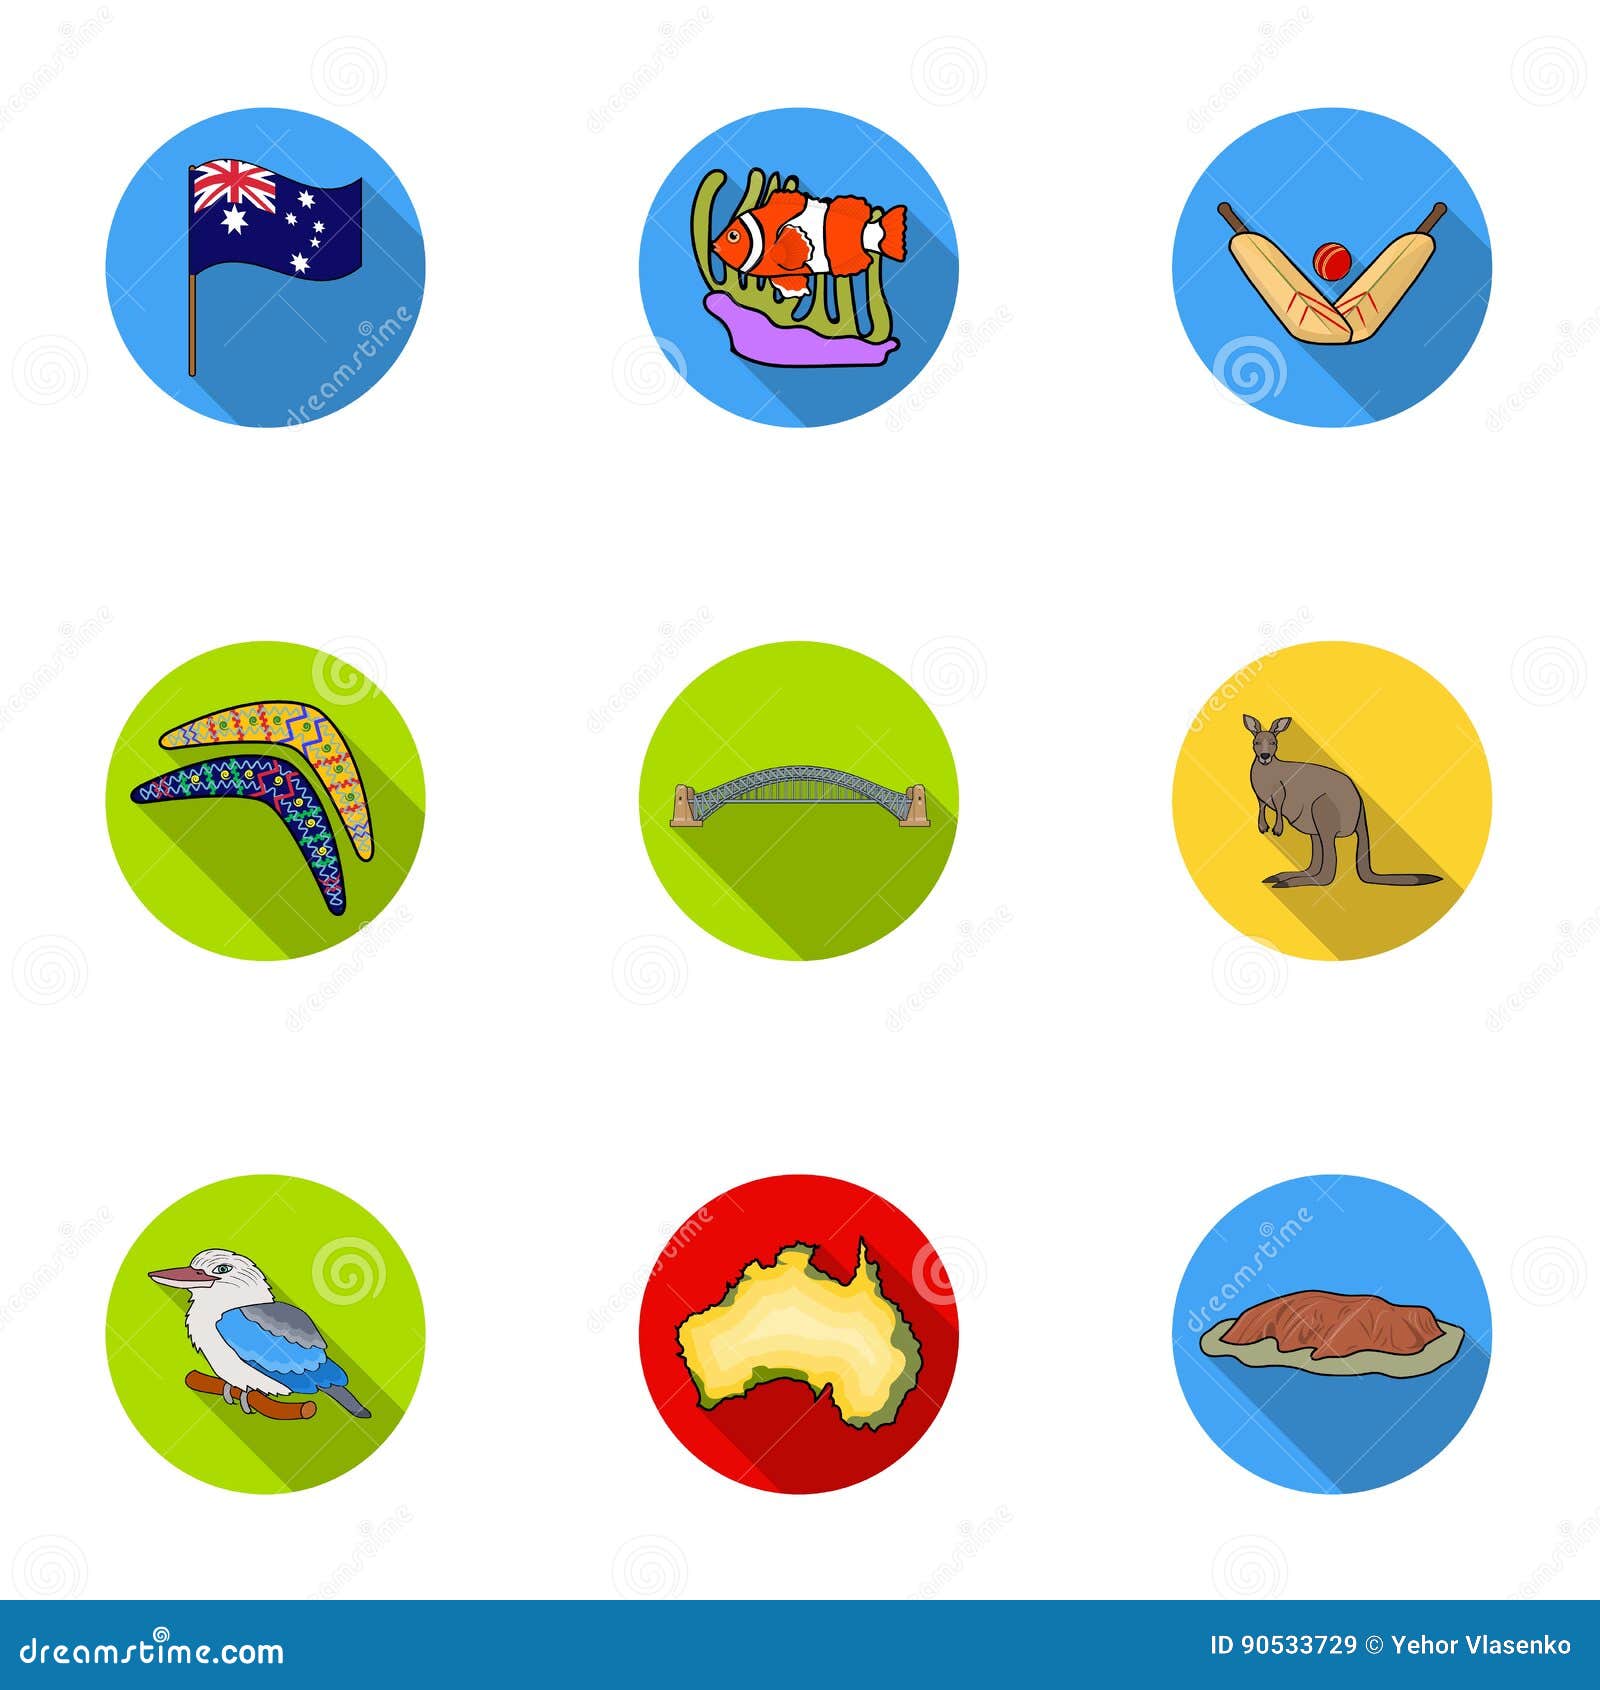 Условные знаки австралии. Австралия символы для детей Угадай. Australia symbols.